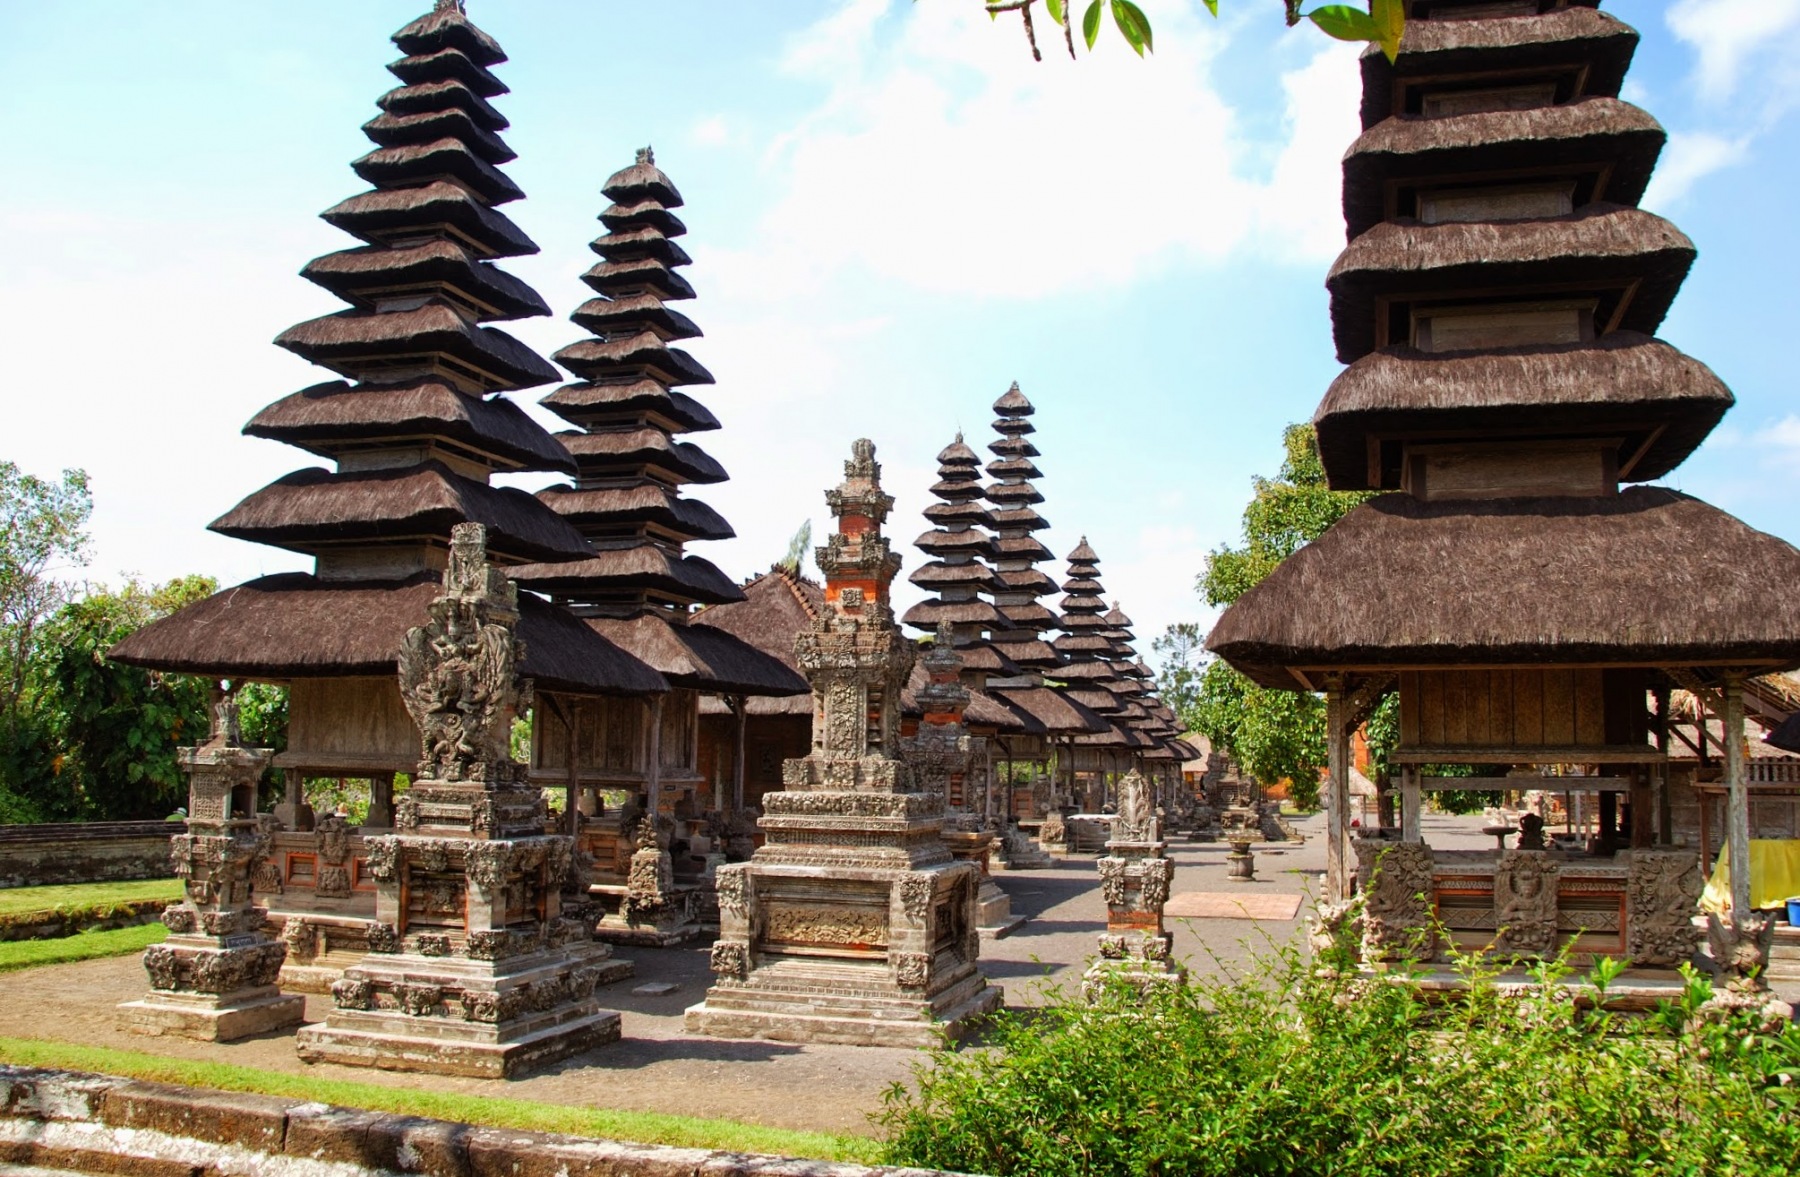 Bali - świątynia Taman Ayun